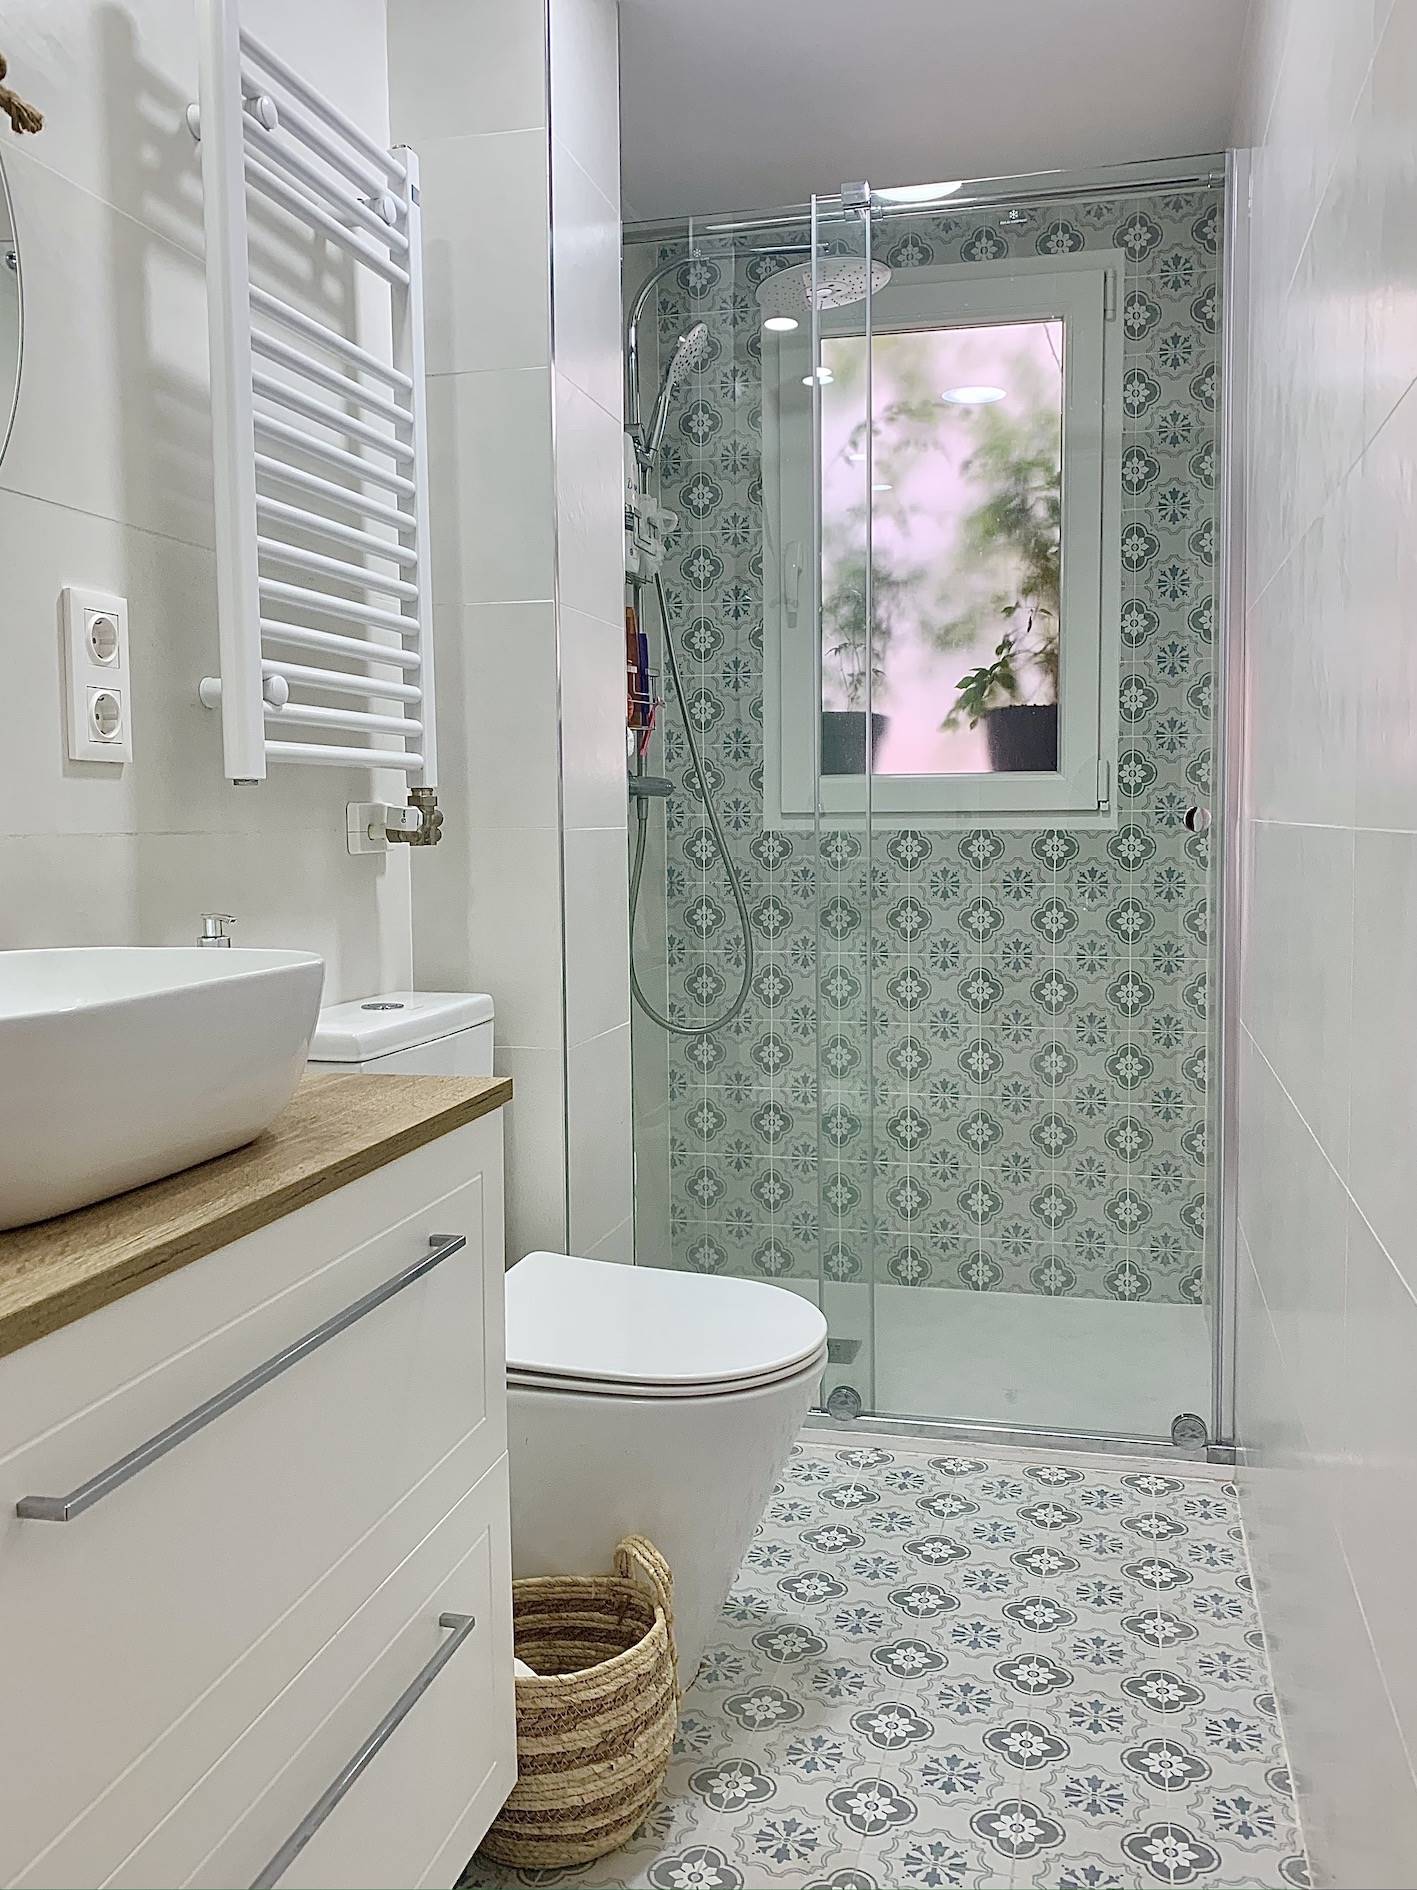 Un baño súper estiloso en tonos blancos con ducha con mampara de cristal tras la reforma.